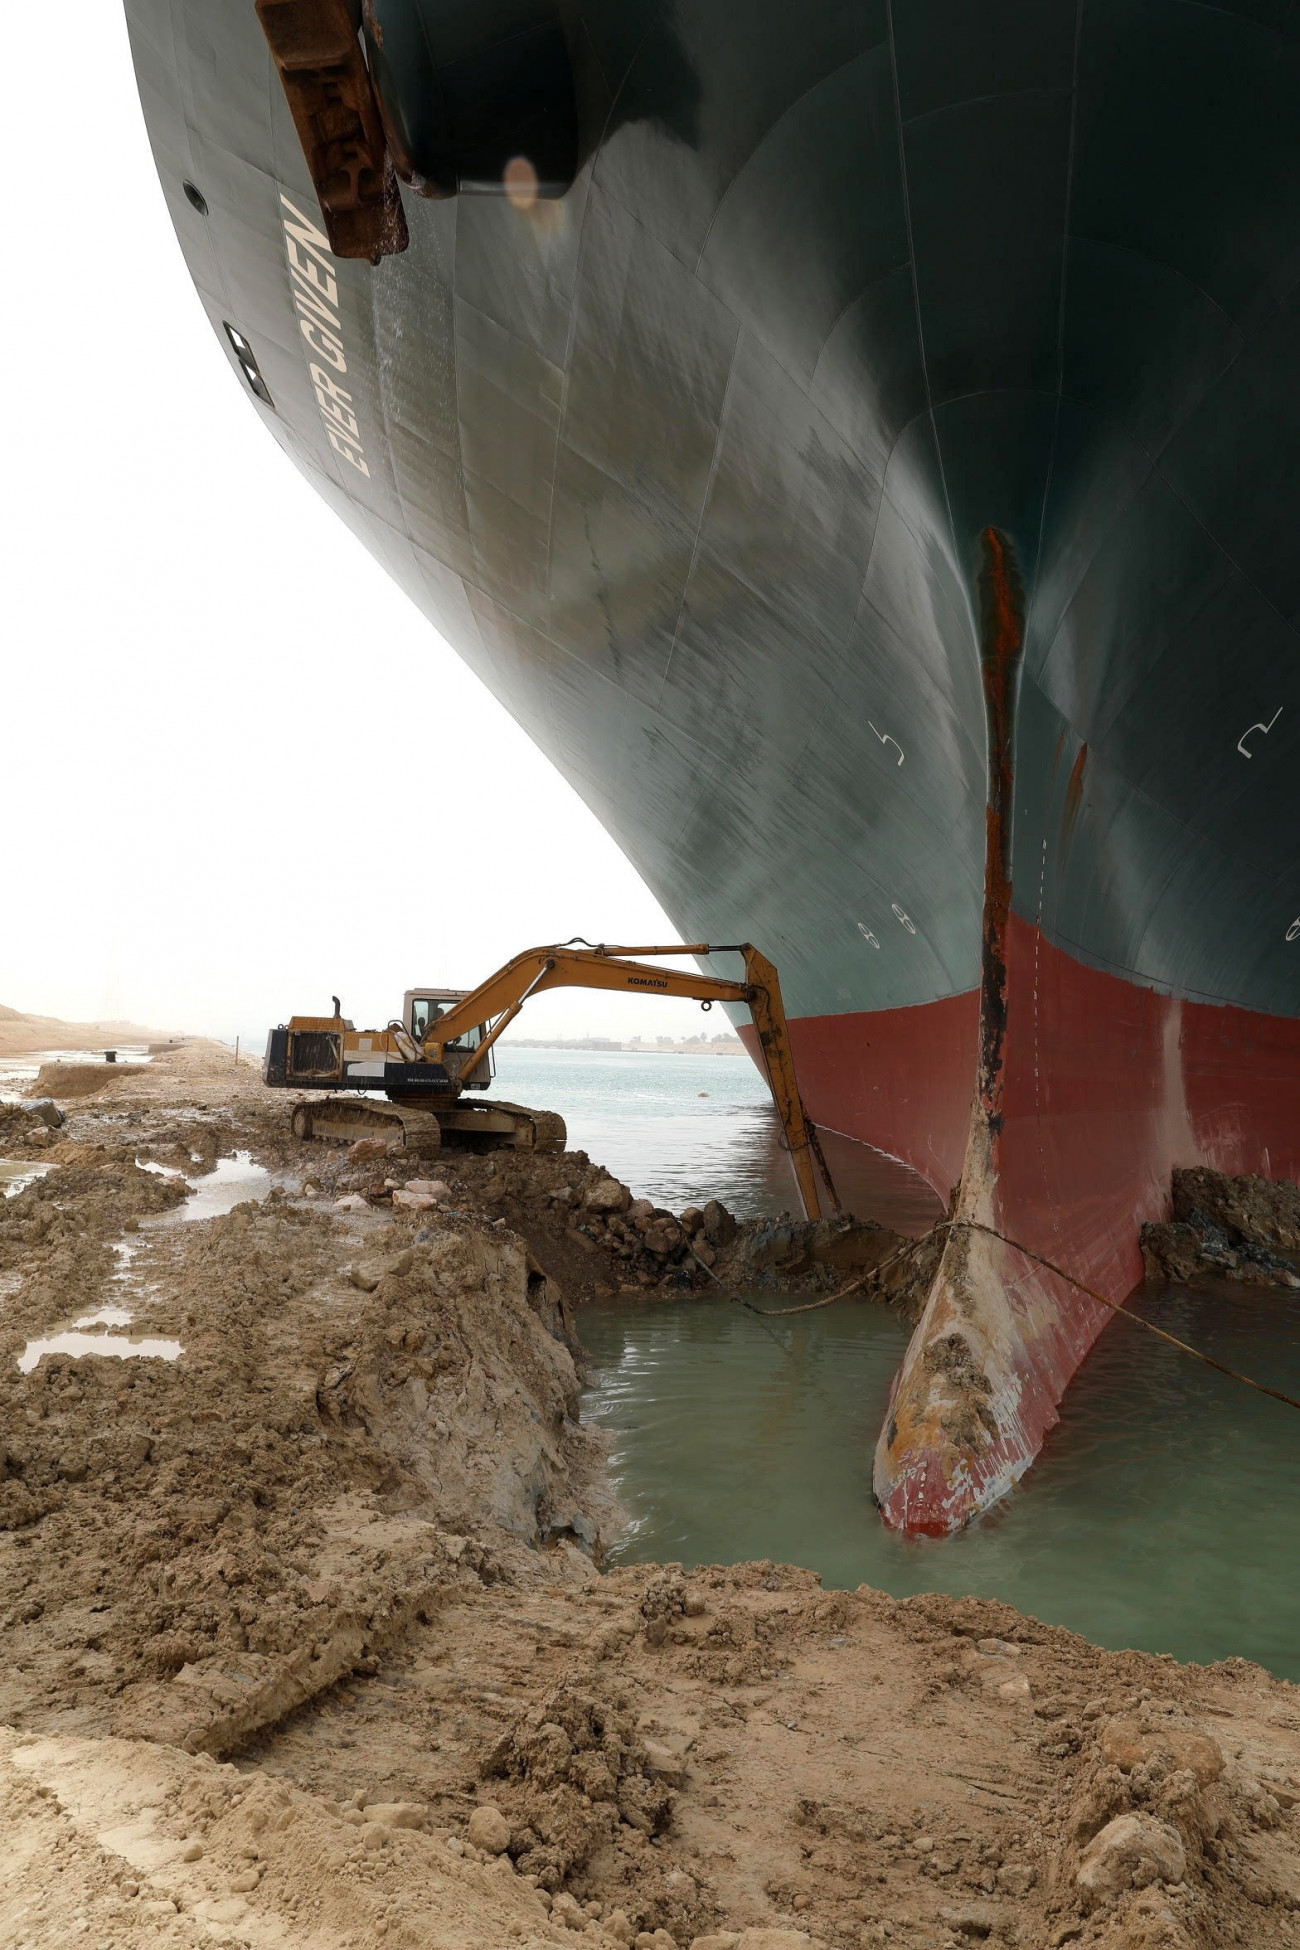 Szuezi-csatorna, 2021. március 25.
A Szuezi-csatorna Hatóság által közreadott képen munkagéppel próbálják kiszabadítani a keresztbe fordult és beszorult Ever Given nevű konténerszállítót a Szuezi-csatornában 2021. március 25-én. A világ egyik legnagyobb teherhajója egy napja blokkolja a forgalmat, a baleset miatt felfüggesztették a hajóforgalmat a Szuezi-csatornában.
MTI/EPA/Szuezi-csatorna Hatóság